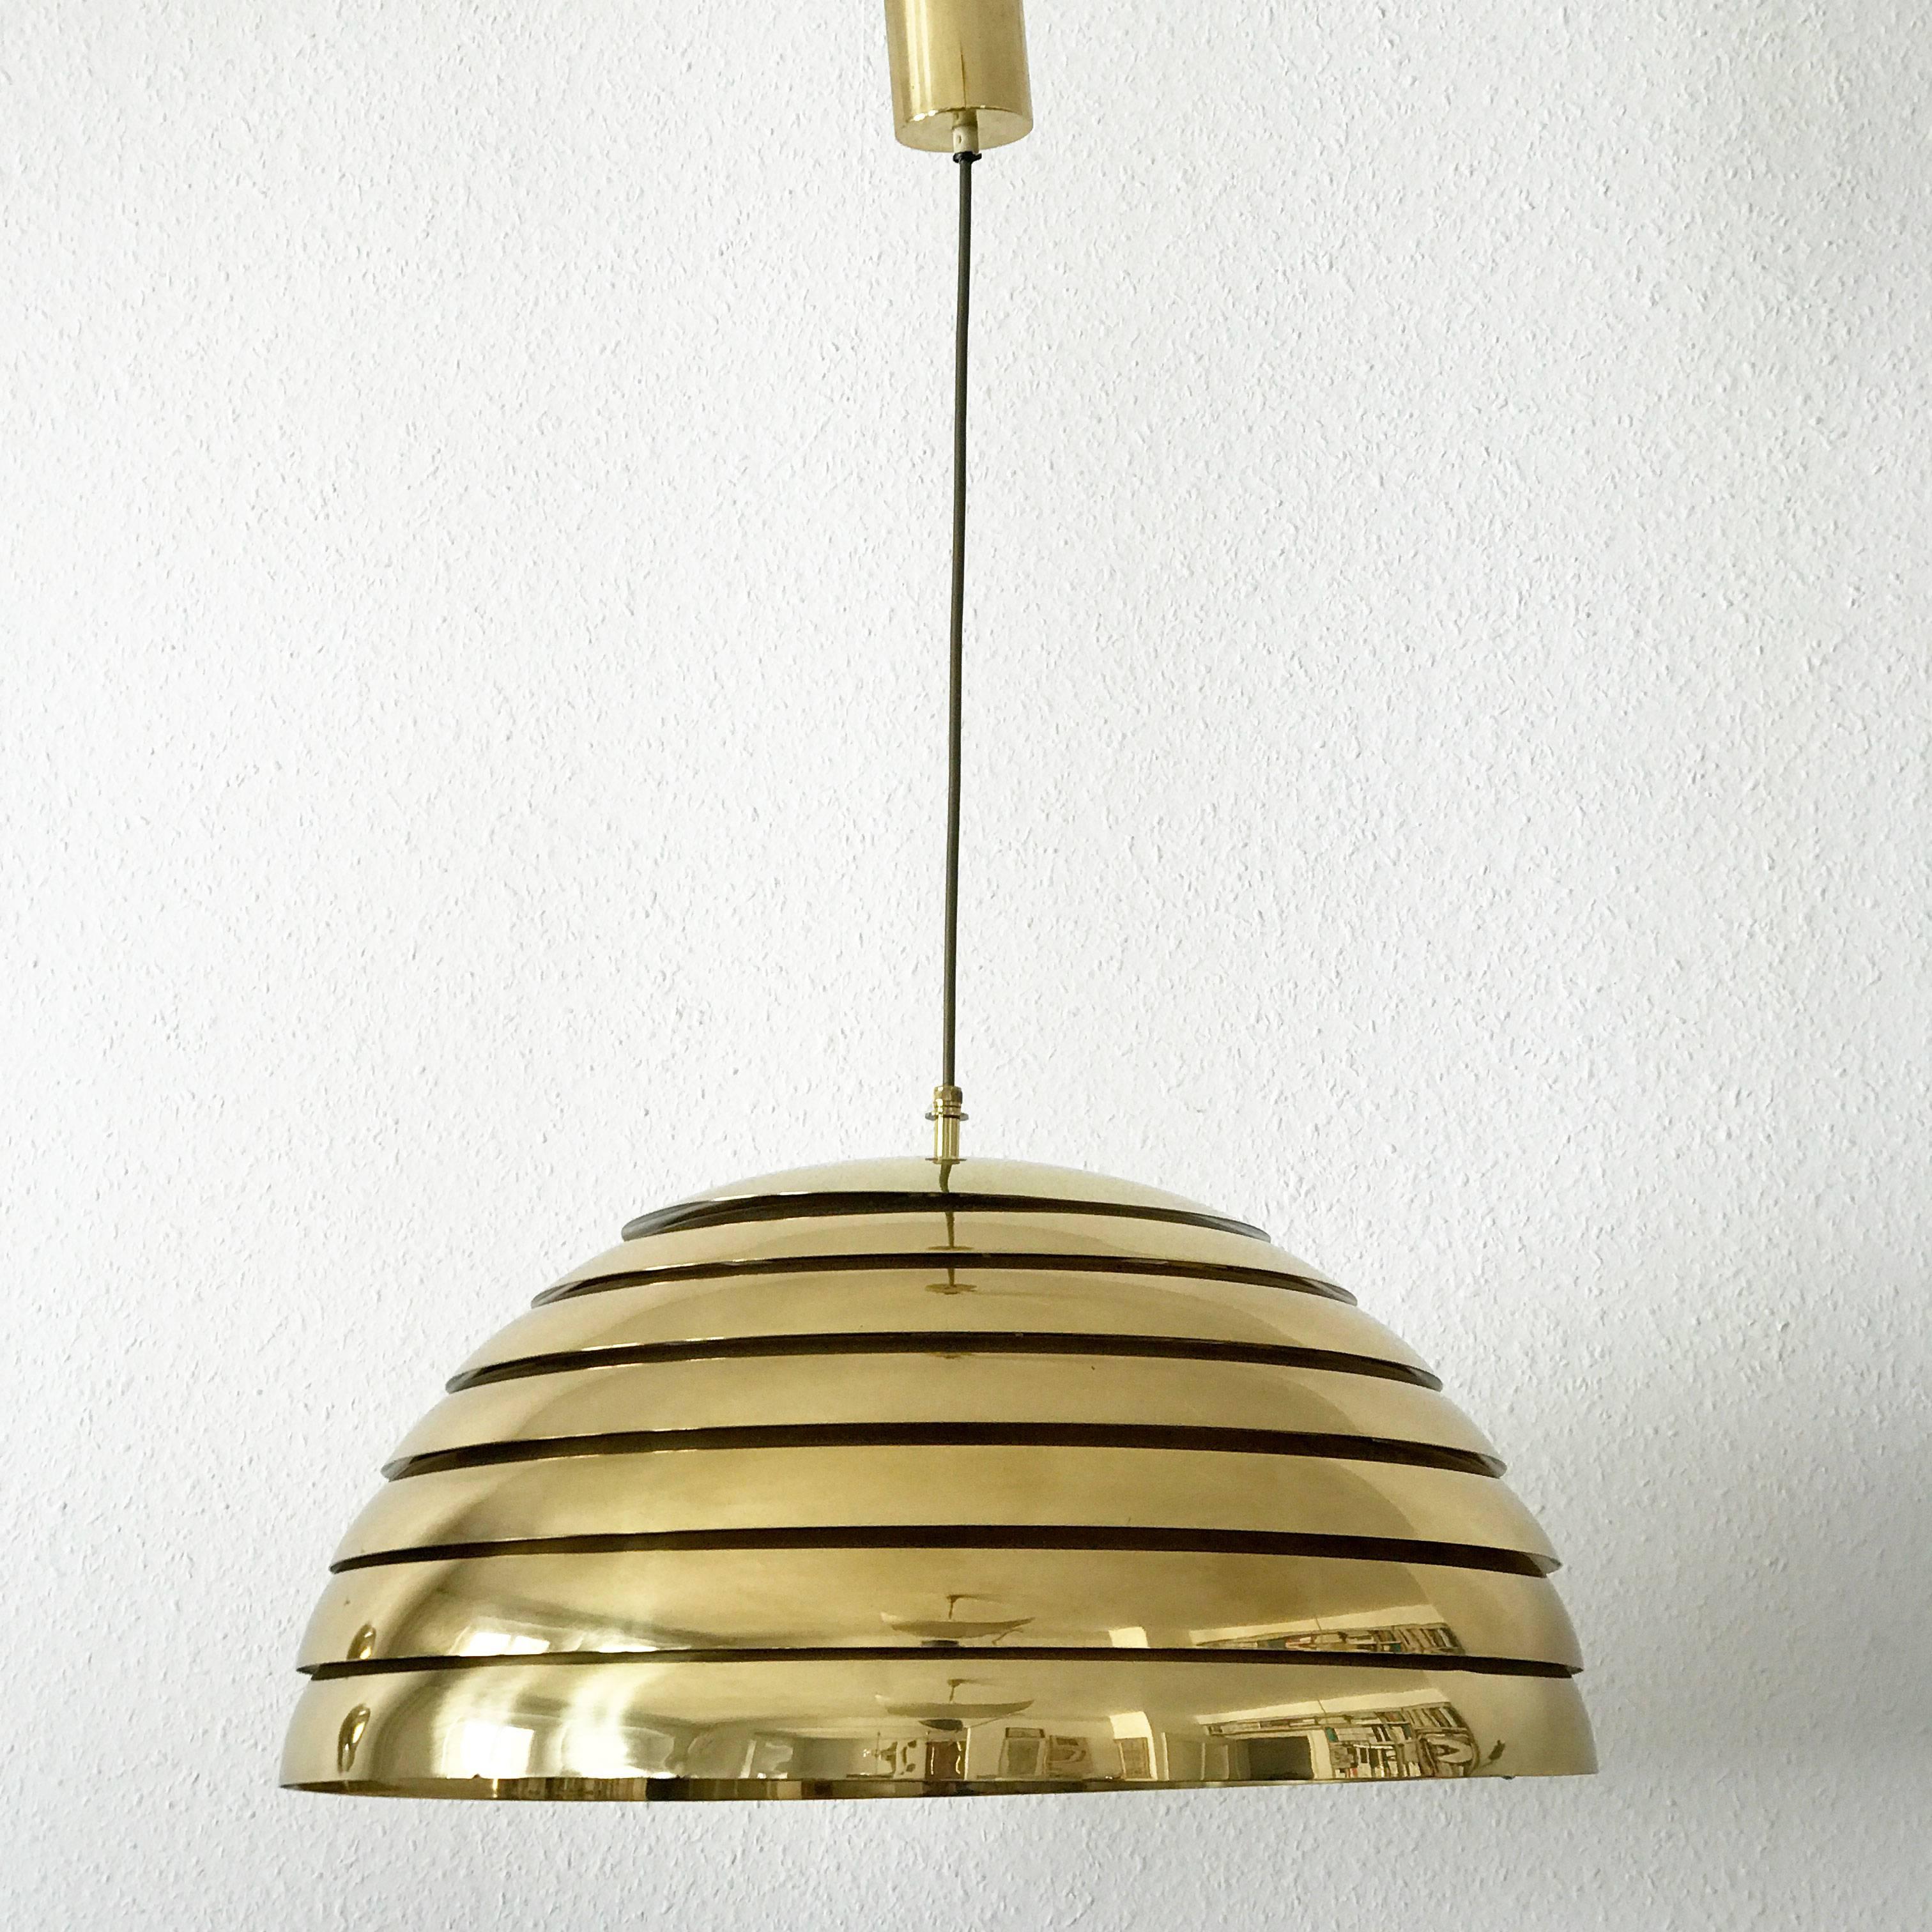 Polished Large Mid Century Modern Brass Pendant Lamp by Vereinigte Werkstätten München For Sale